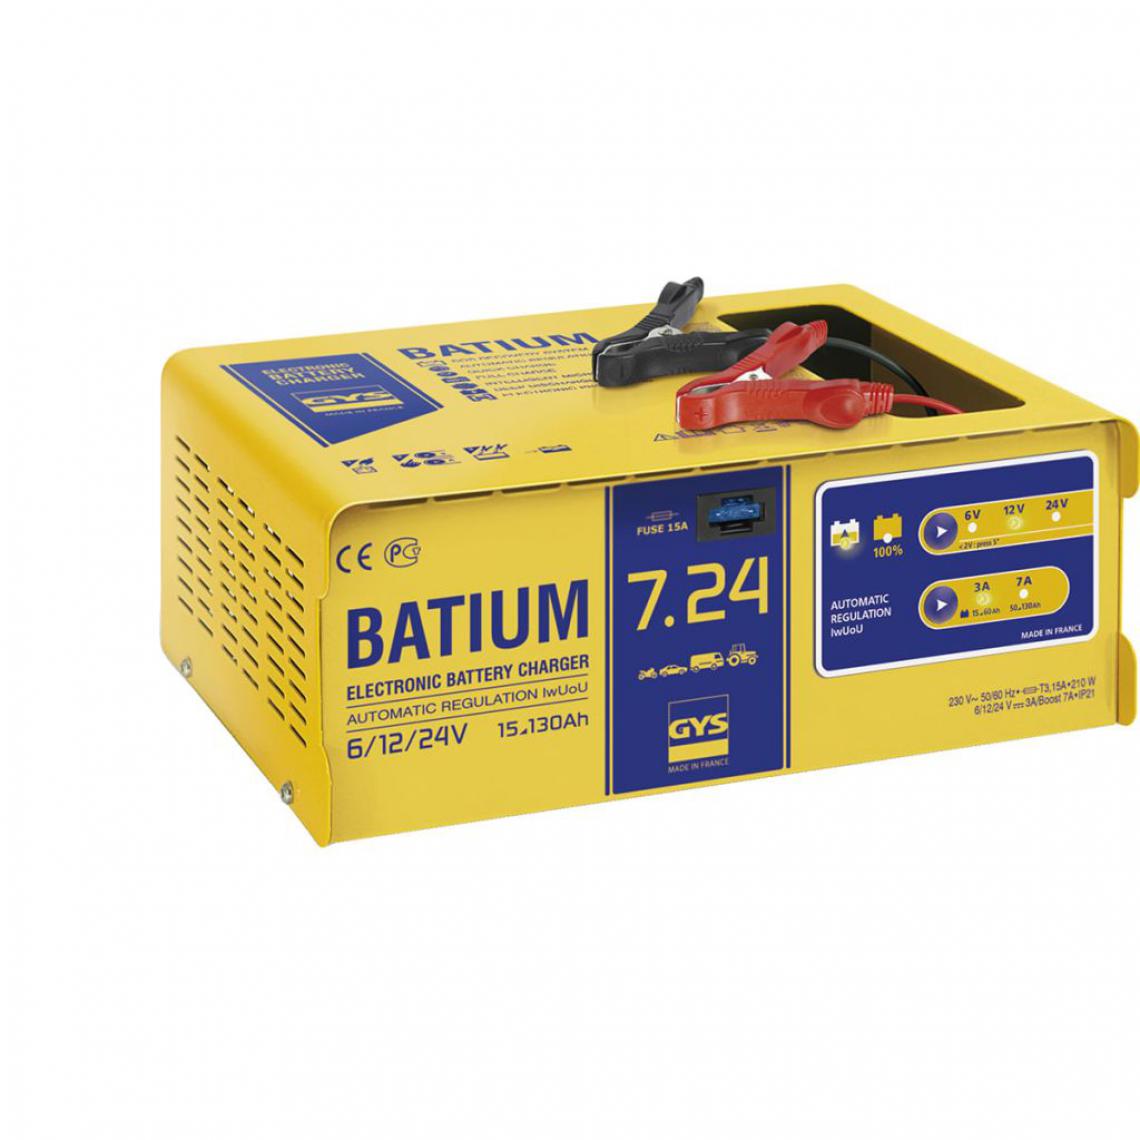 Gys - GYS Chargeur de batterie BATIUM 7-24 15-130 Ah 210 W 3/7 A - Consommables pour outillage motorisé